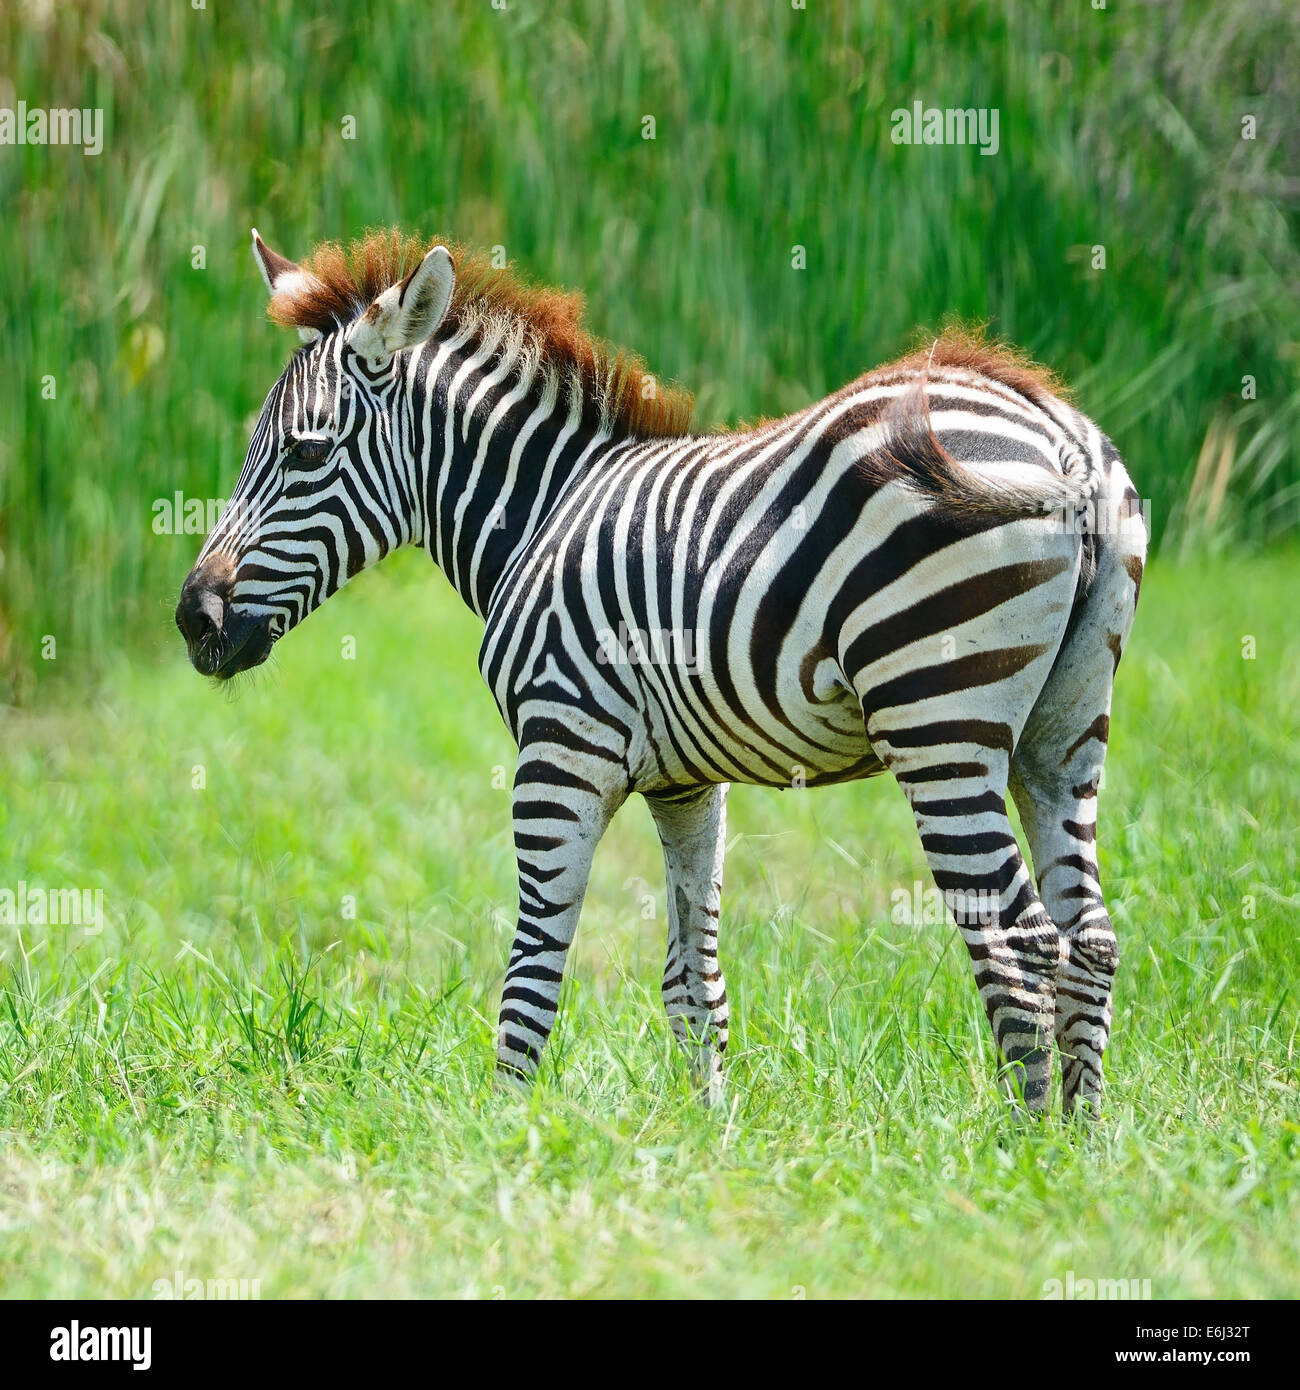 Common Zebra or Burchell's Zebra (Equus burchelli) Stock Photo